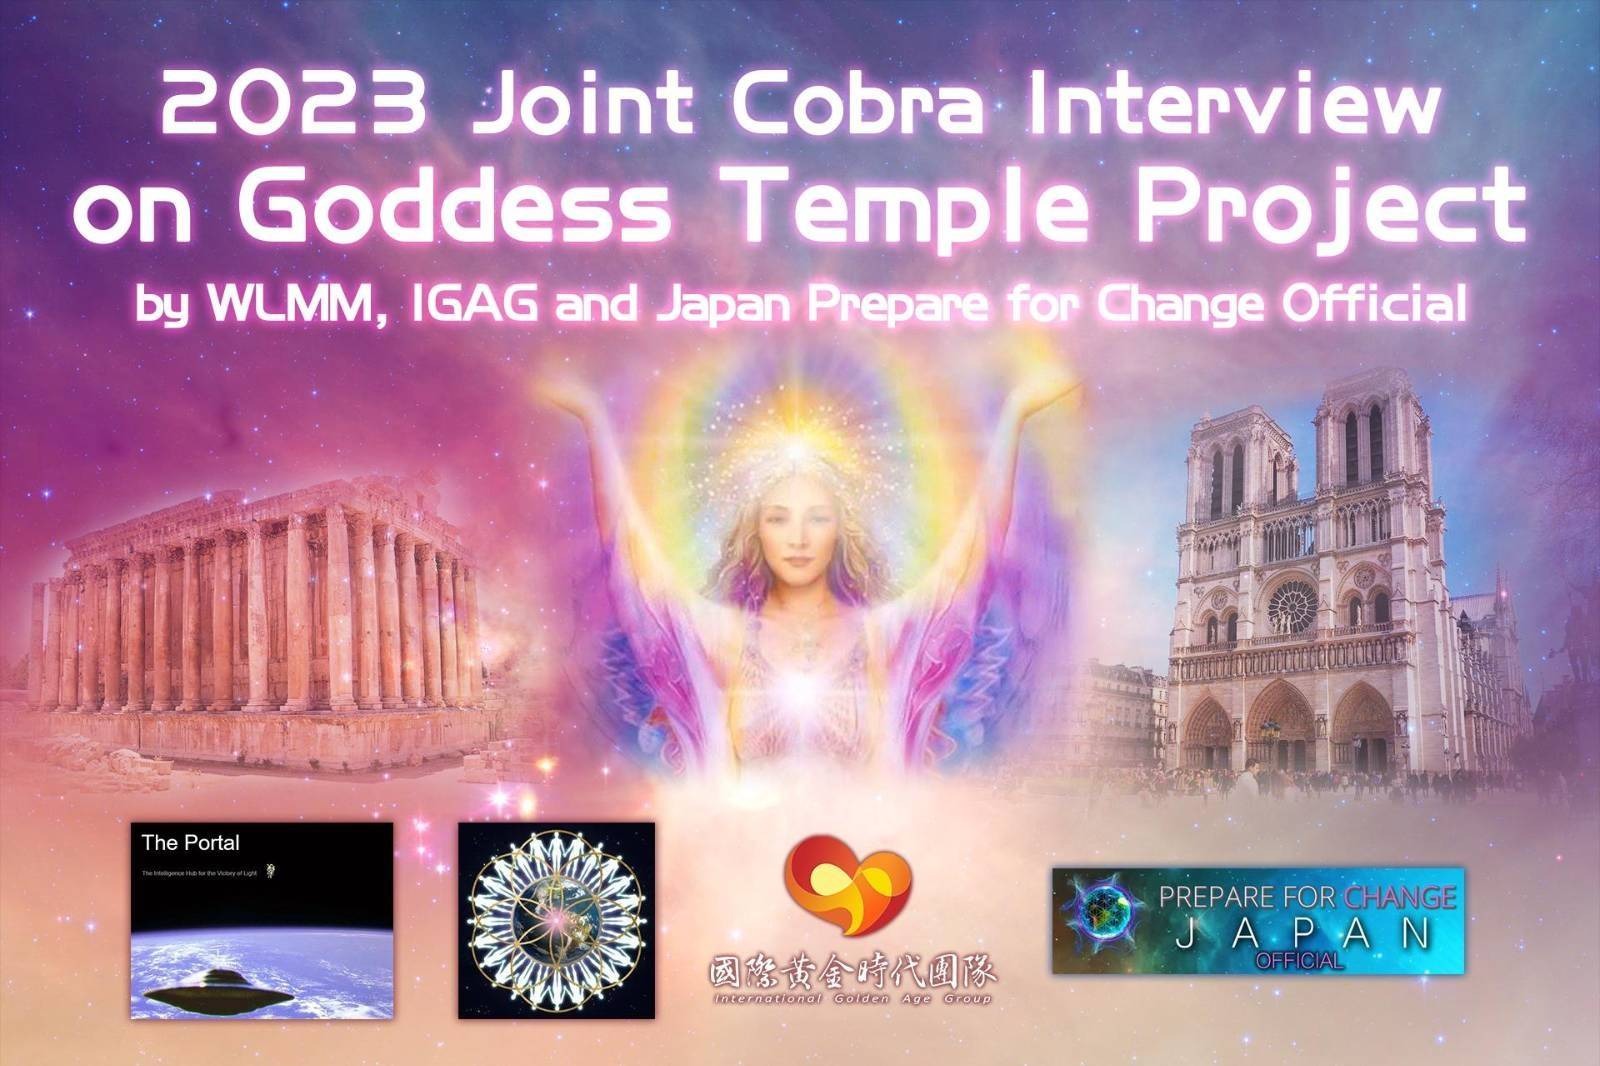 2023年1月我們愛集體冥想、國際黃金時代團隊、日本準備轉變團隊Official聯合主持女神神殿專題訪談